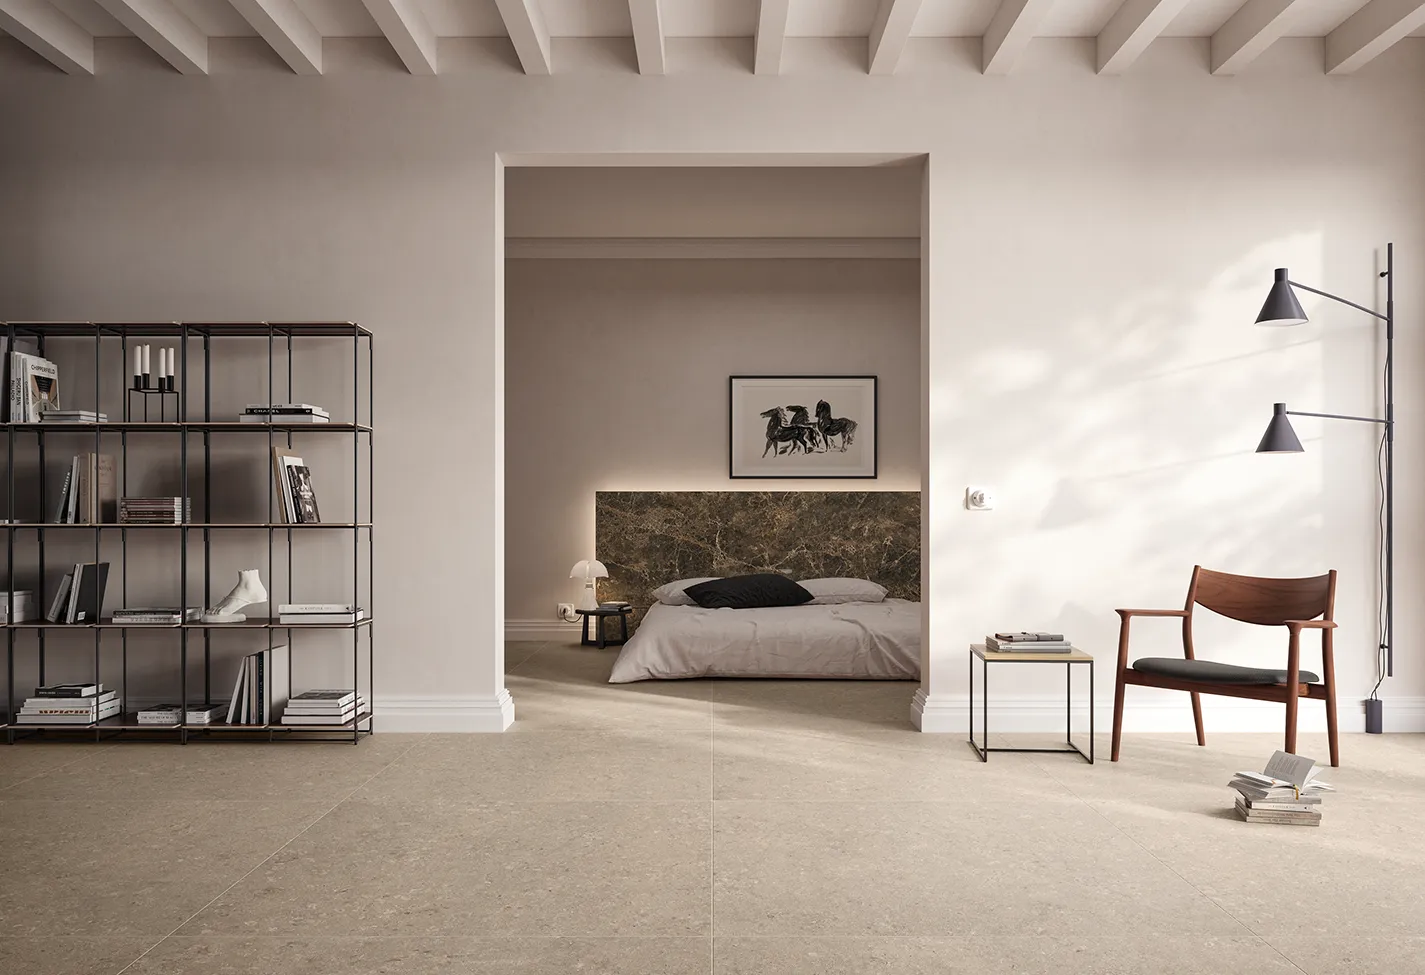 Intérieur minimaliste spacieux avec sol en grès cérame beige, étagère moderne en métal, vue épurée sur la chambre et mobilier design.